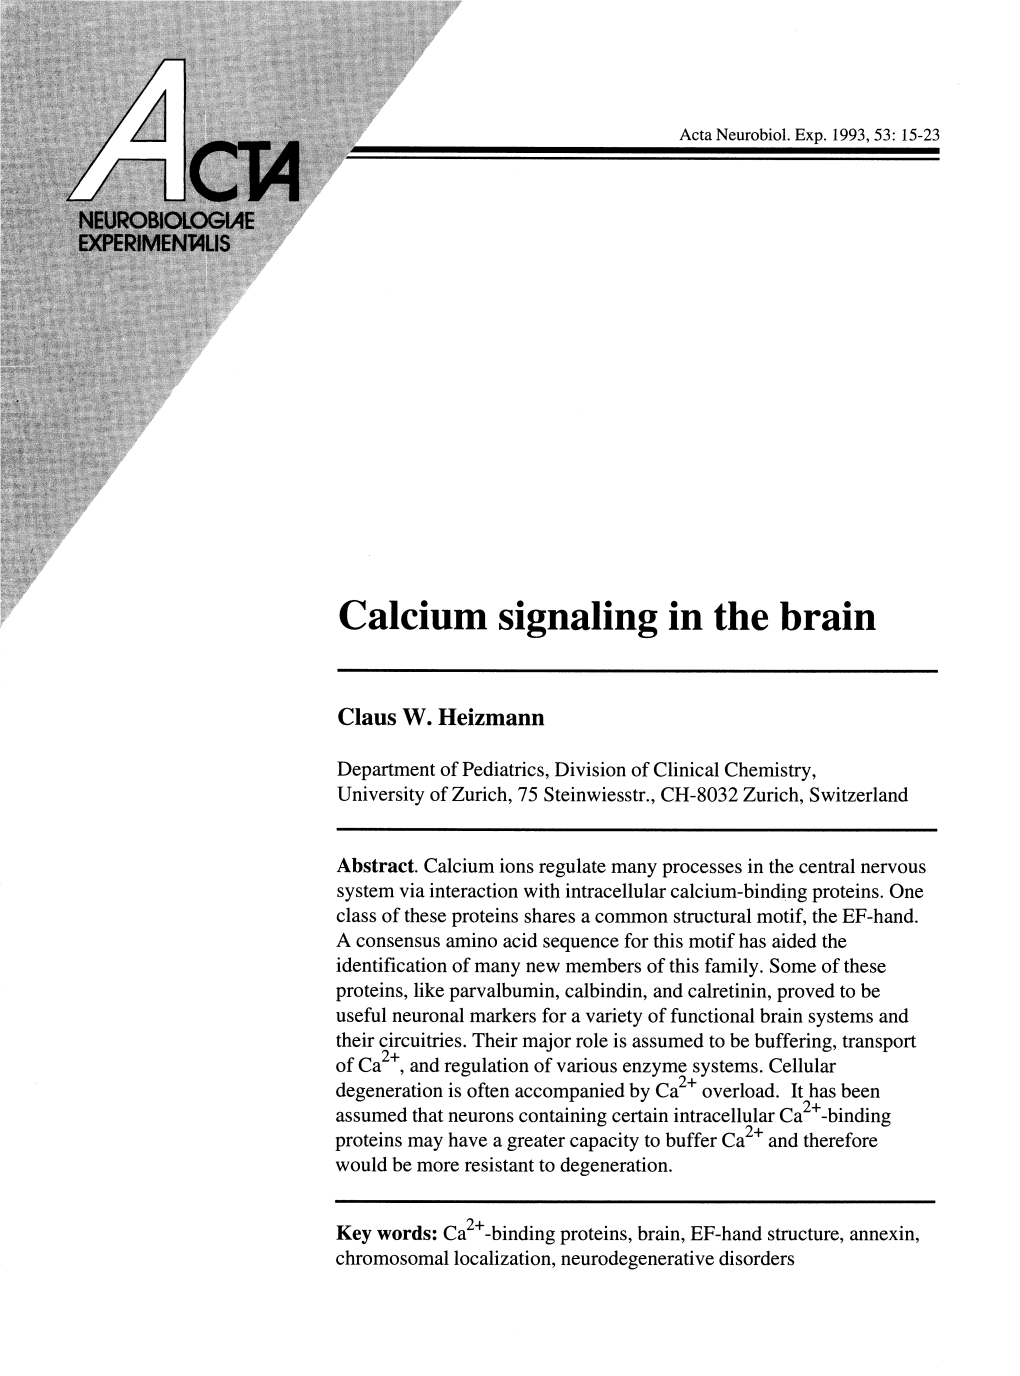 Calcium Signaling in the Brain